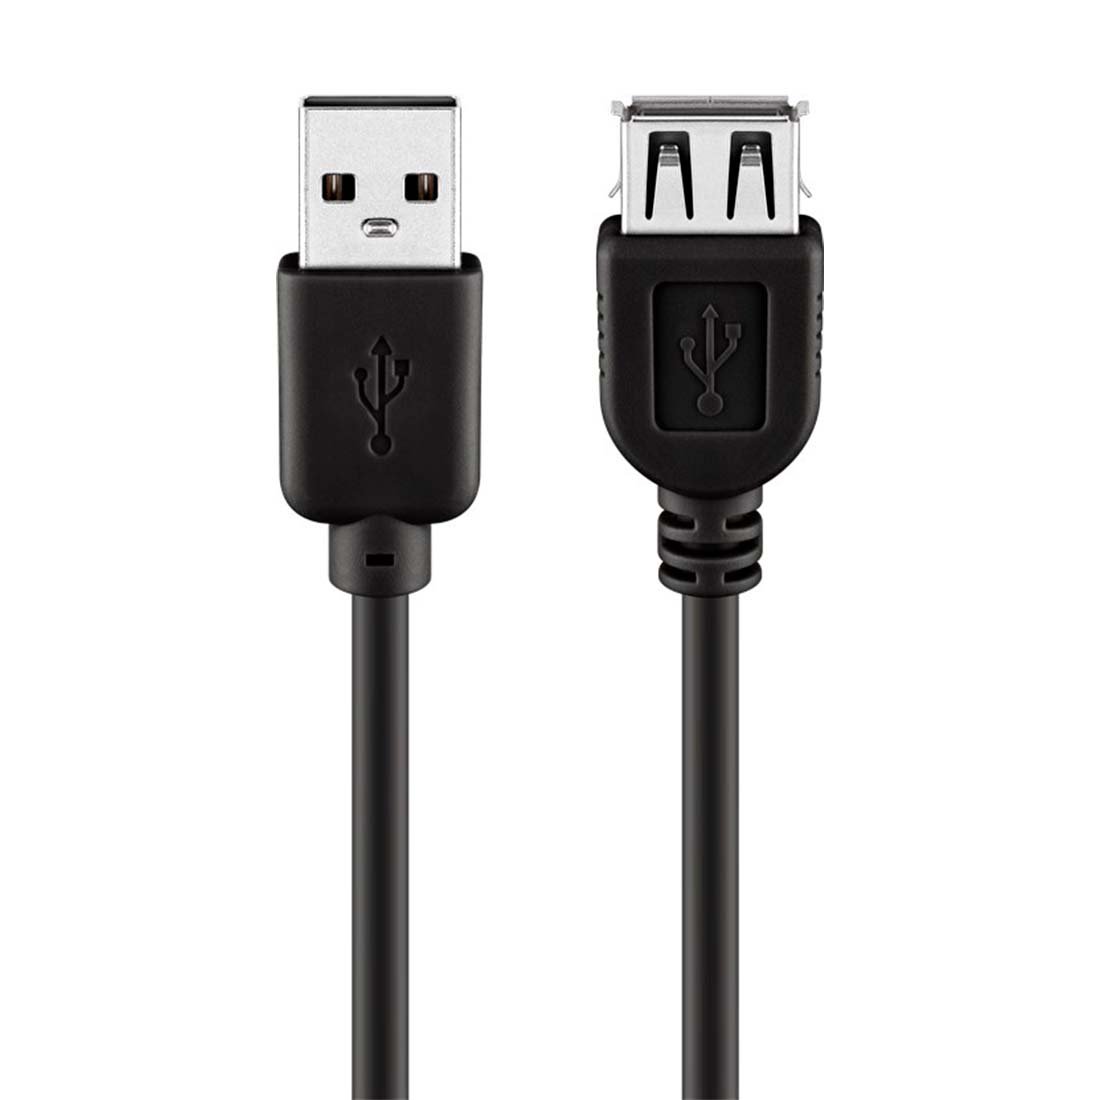 USB 2.0 Forlængerkabel - 1.8m - USB-A Han / USB-A Hun - Sort (93599)